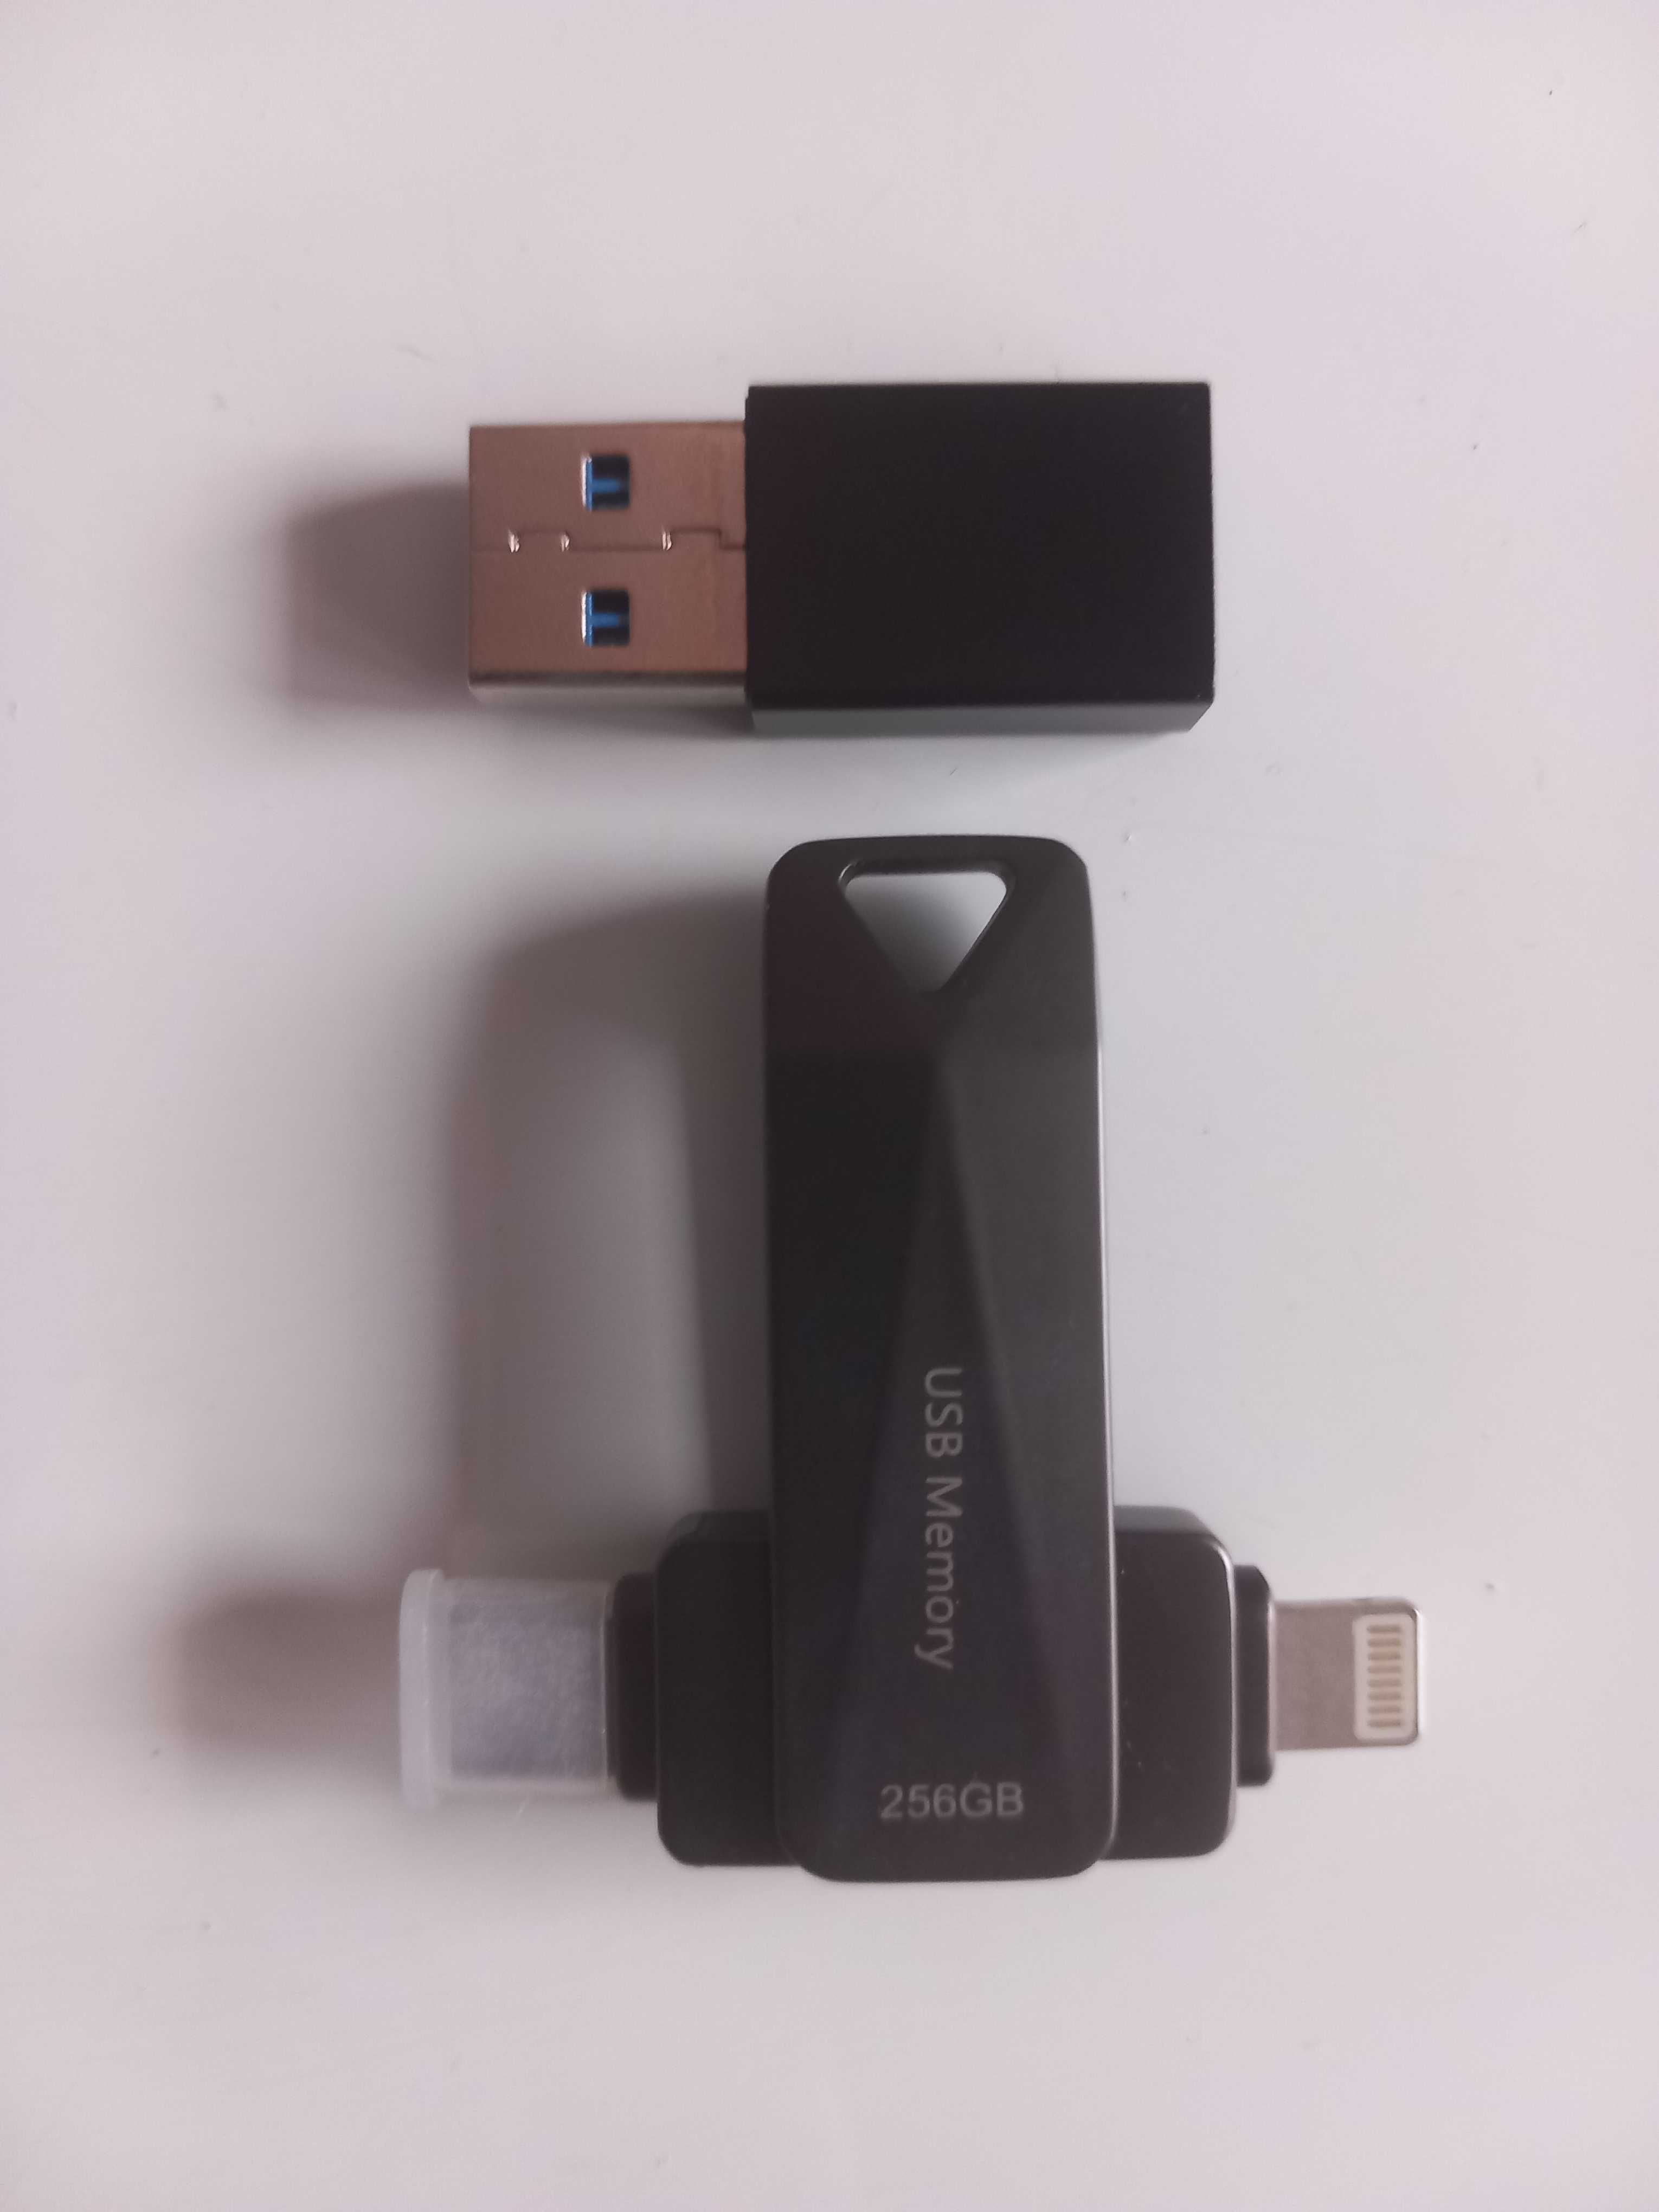 PAMIĘĆ PRZENOŚNA, wielofunkcyjny dysk flash USB, 256GB